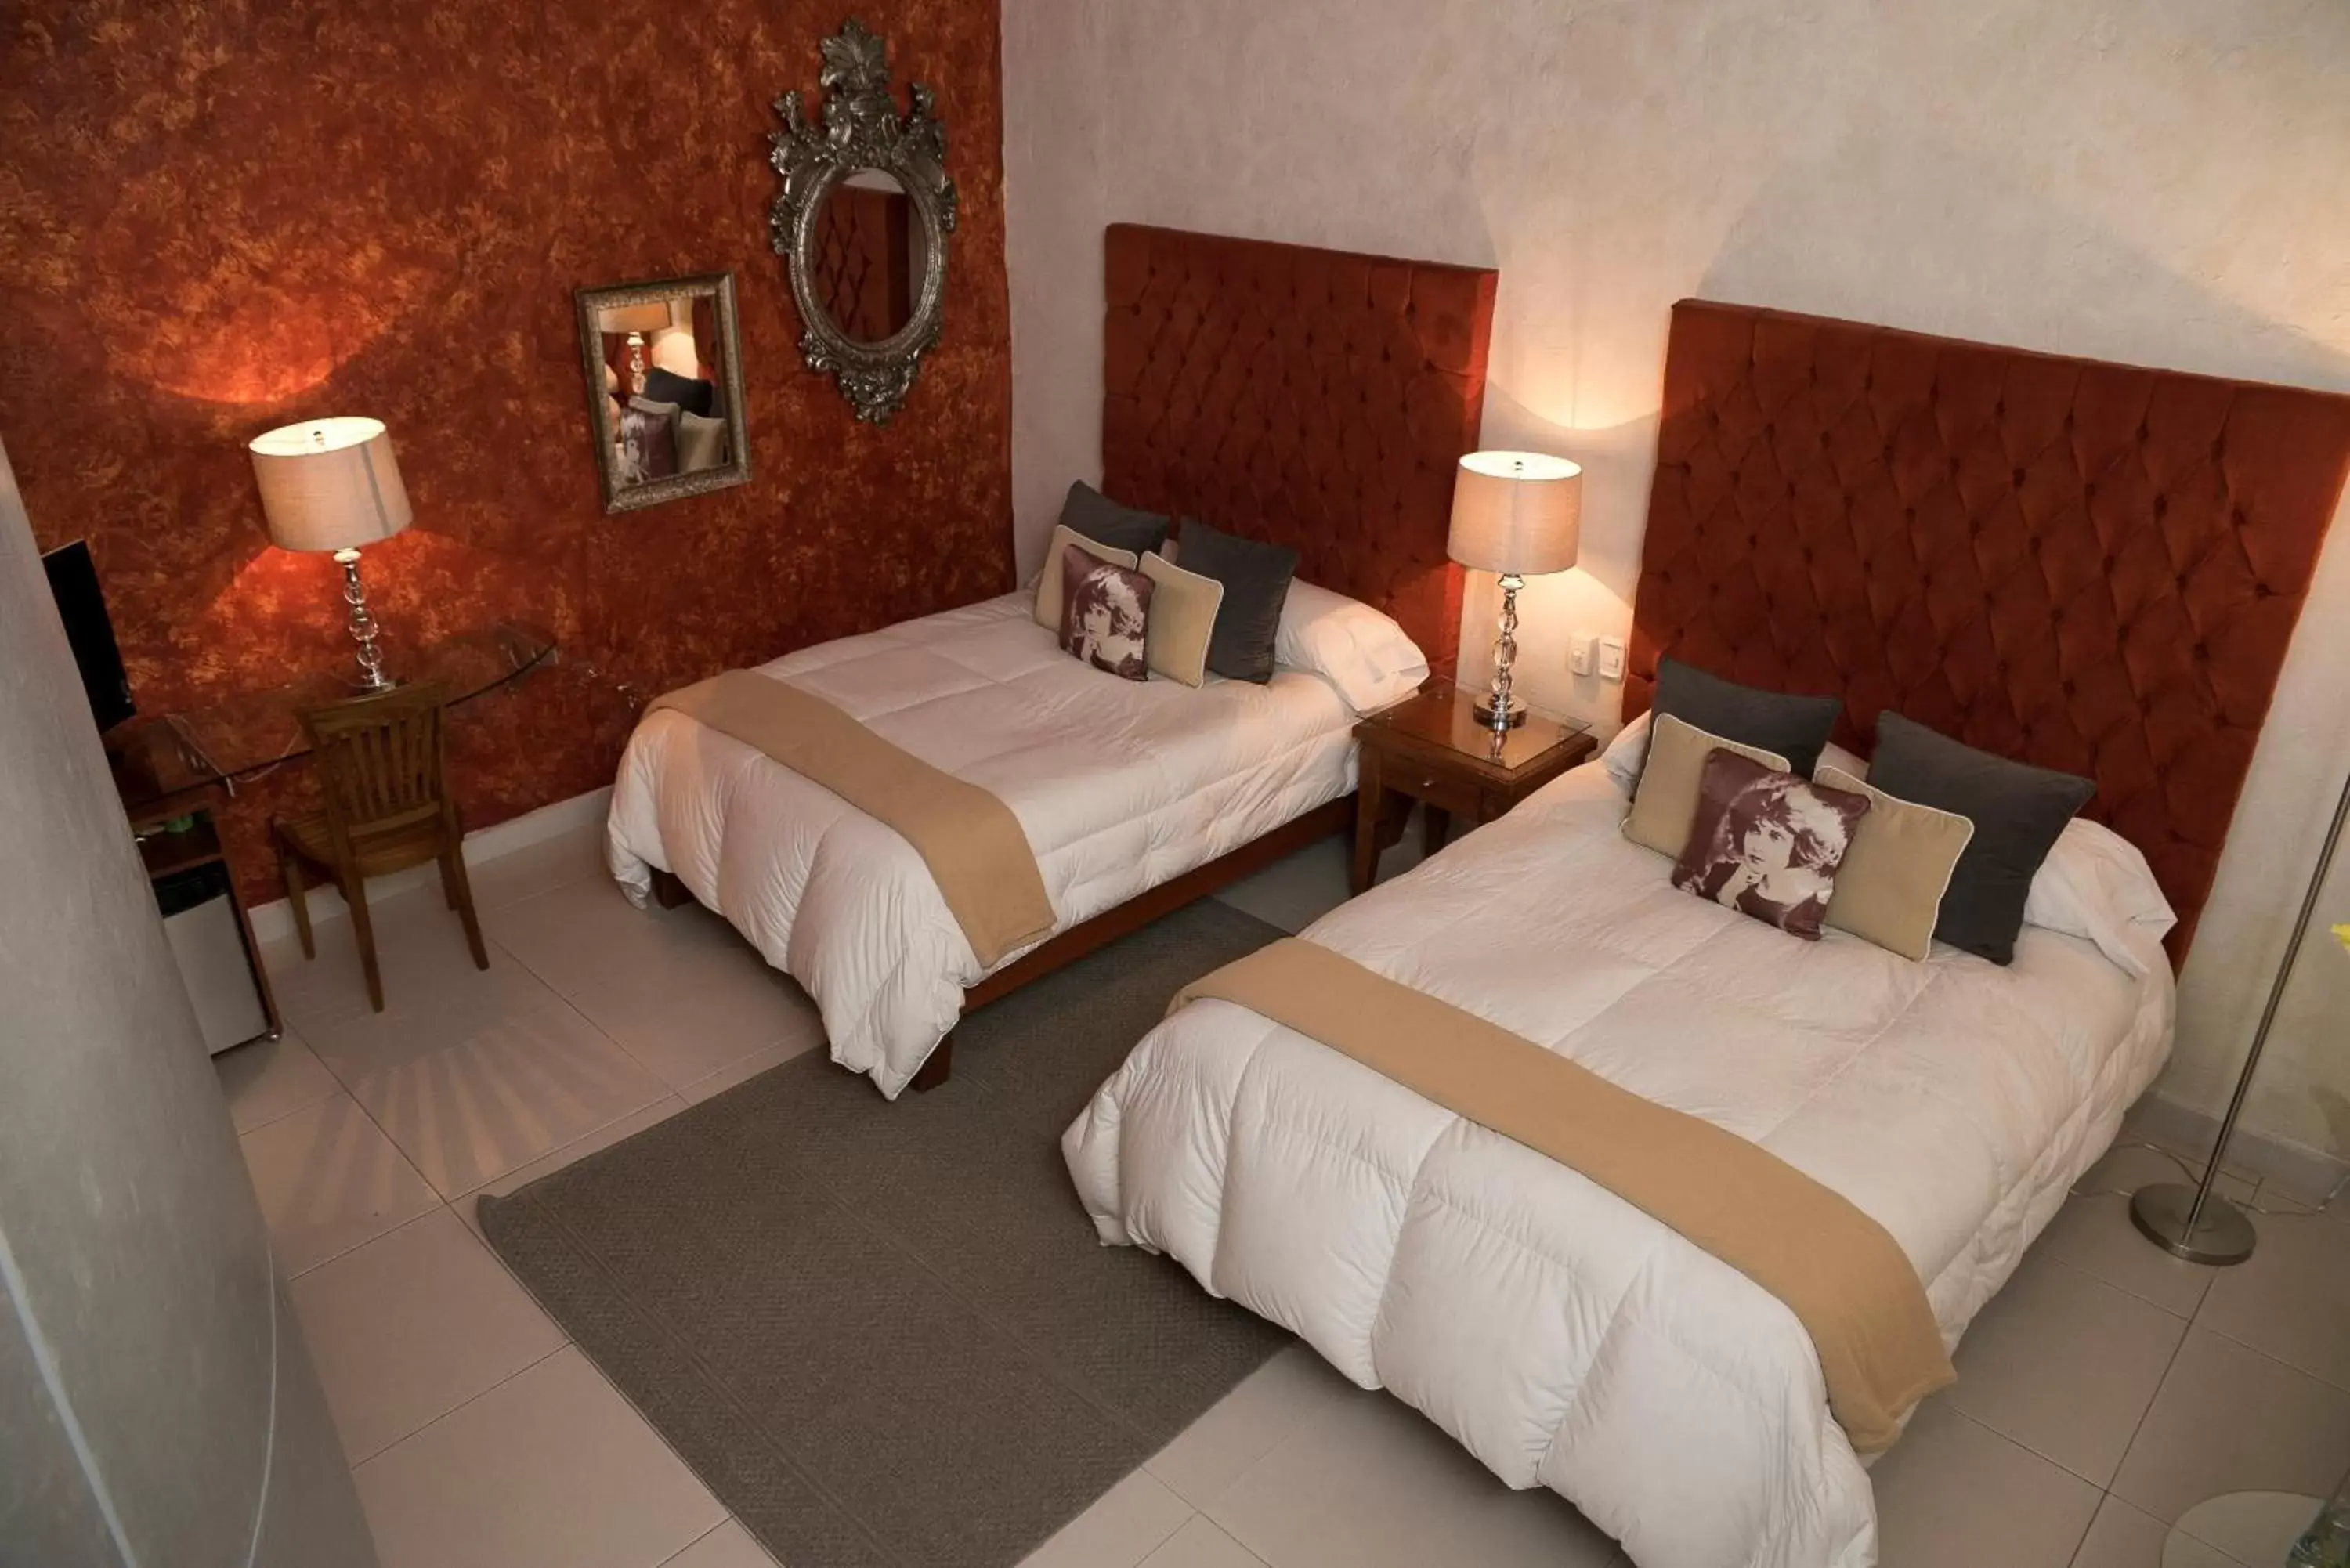 Bed in El Sueño Hotel & Spa